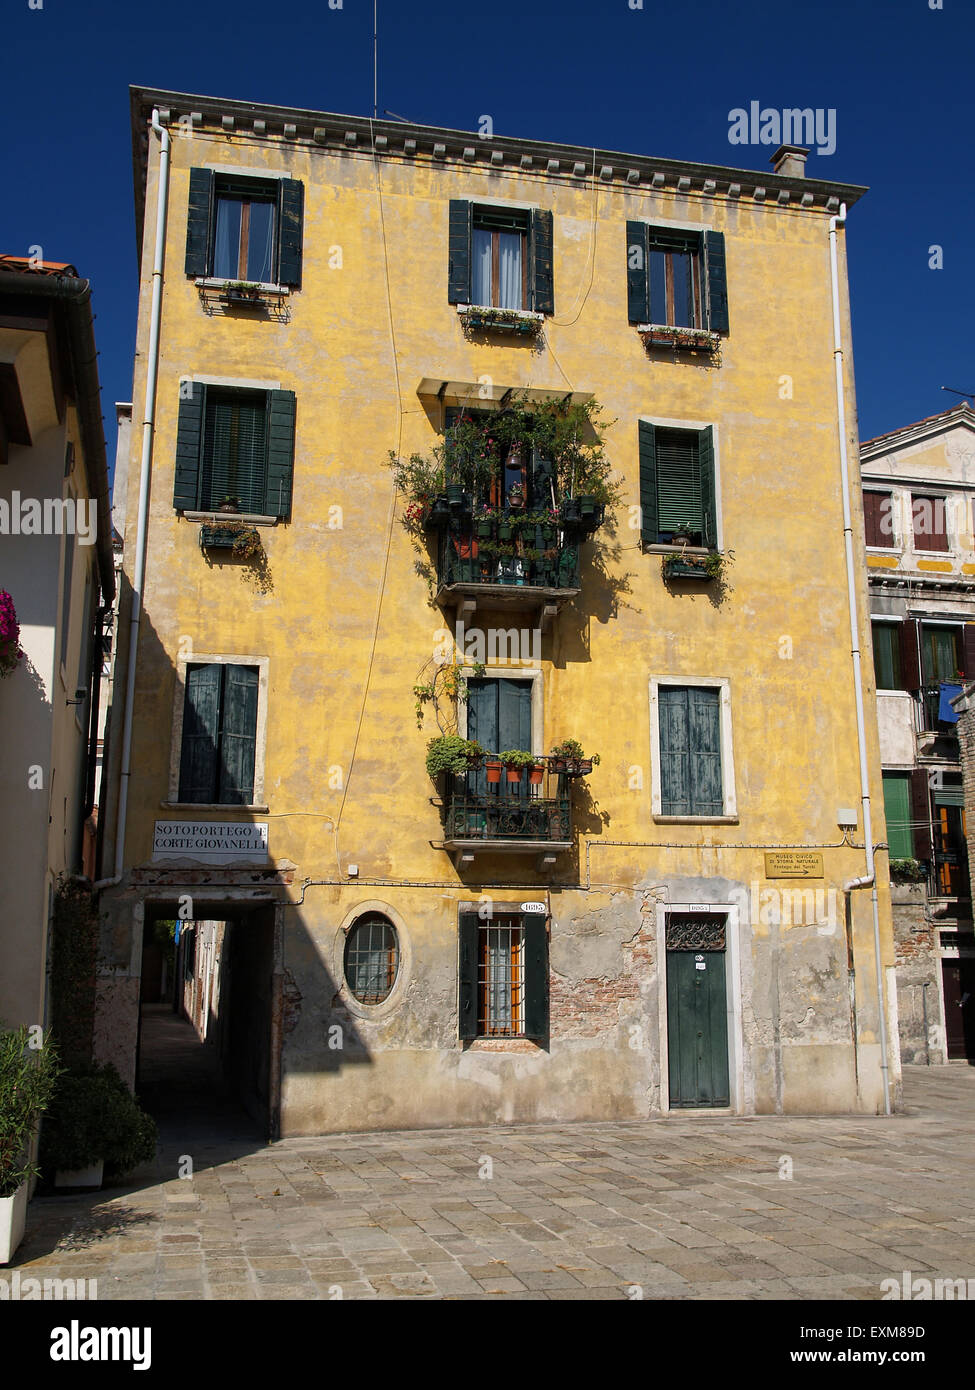 Vieille maison avec des fenêtres avec des volets verts à Venise, Italie. Banque D'Images